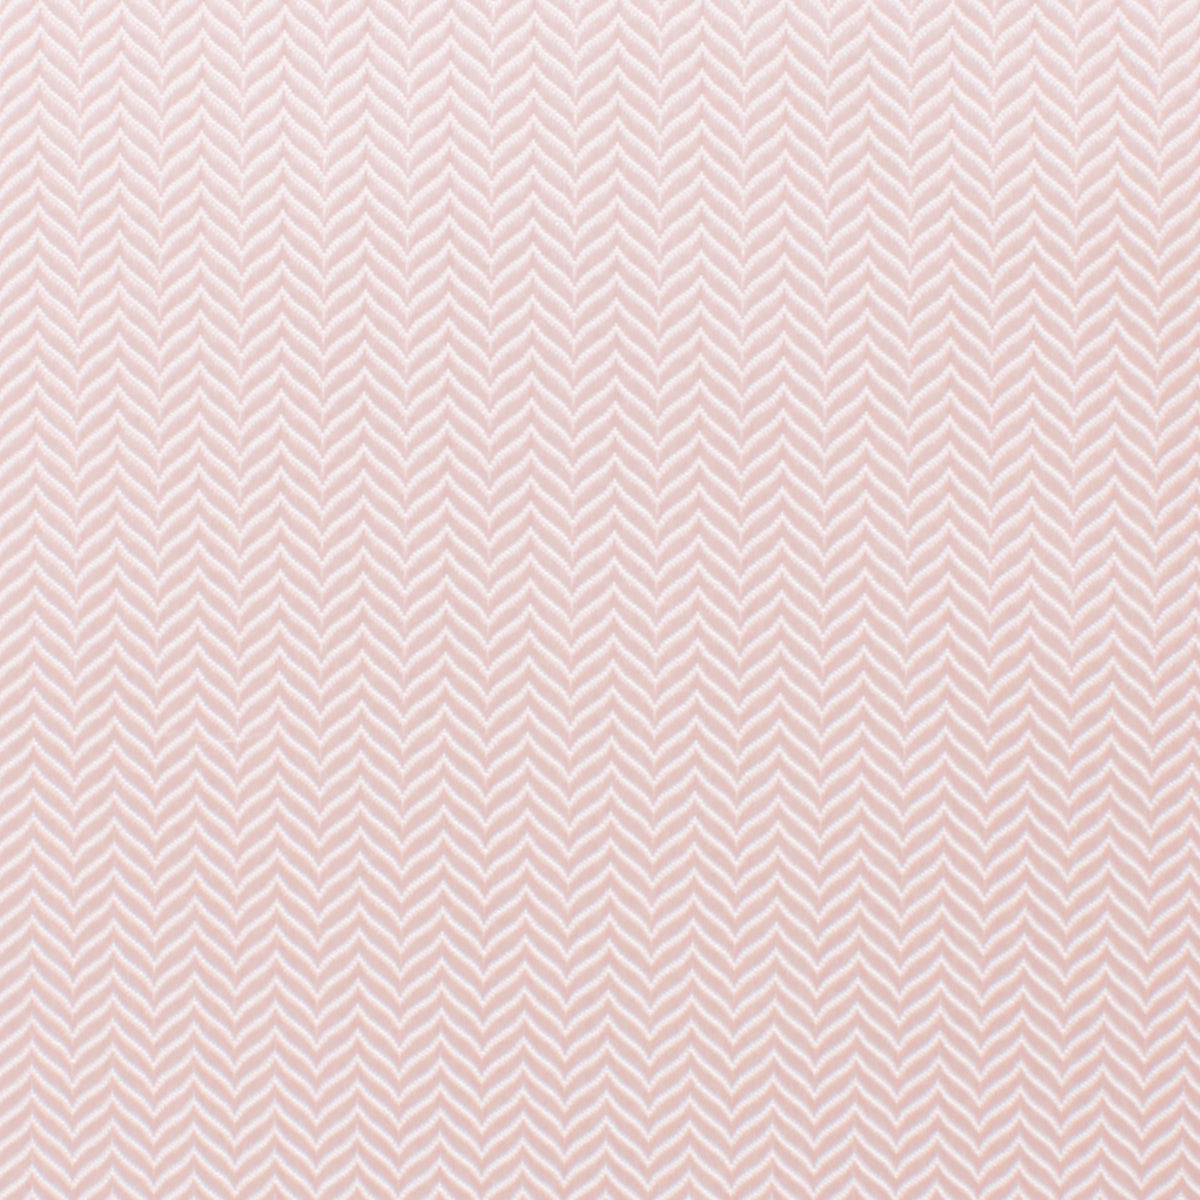 Blush Pink Herringbone Skinny Tie Fabric